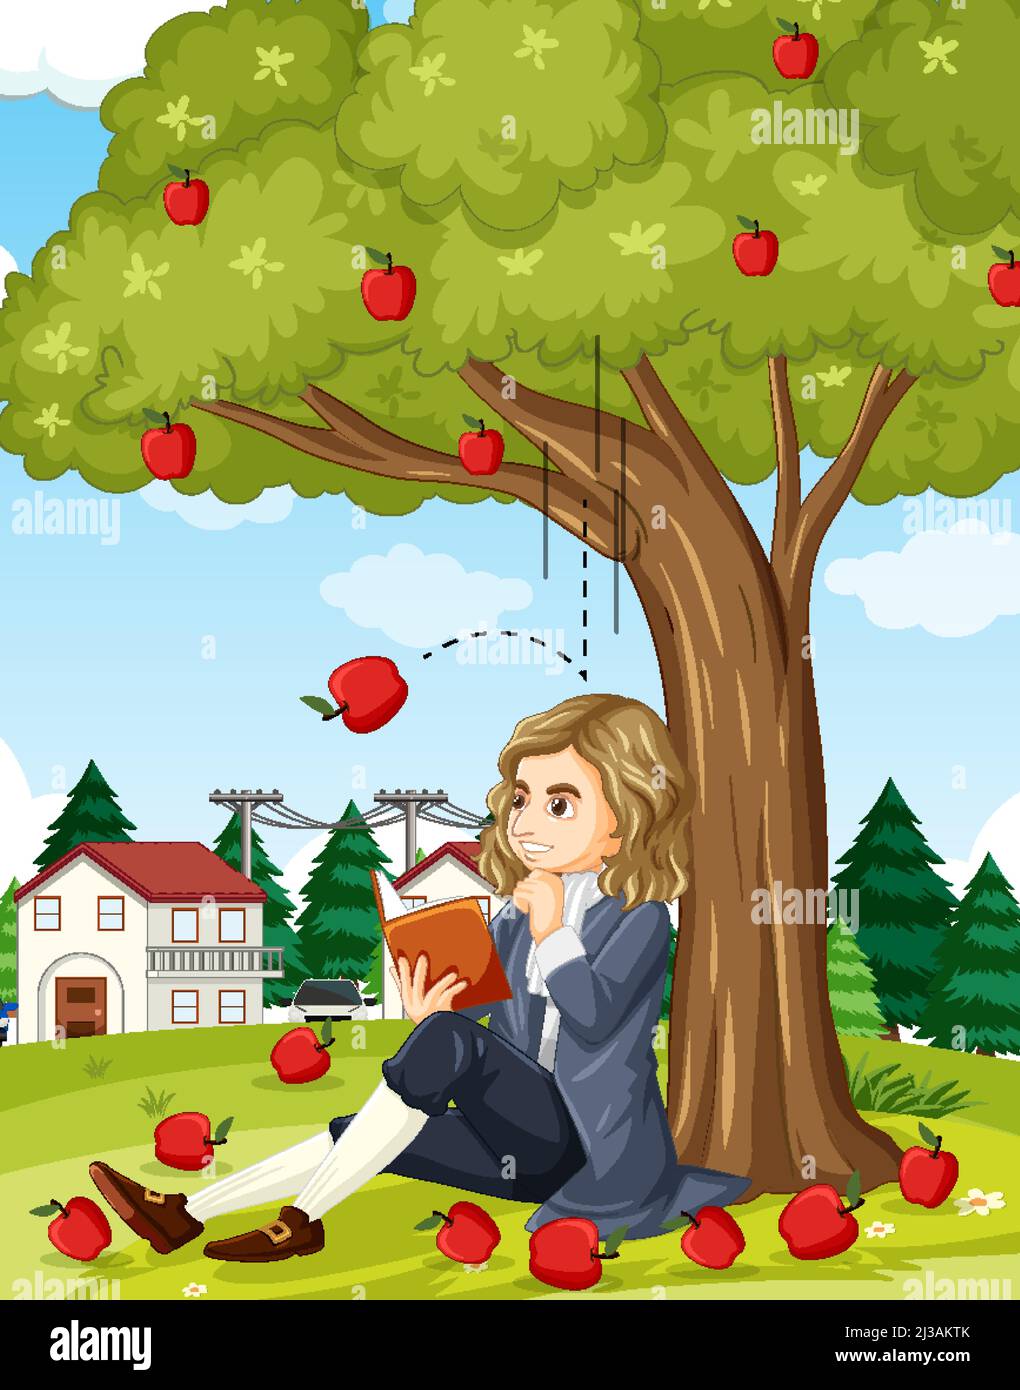 Isaac Newton sitting under apple tree illustration Stock Vector